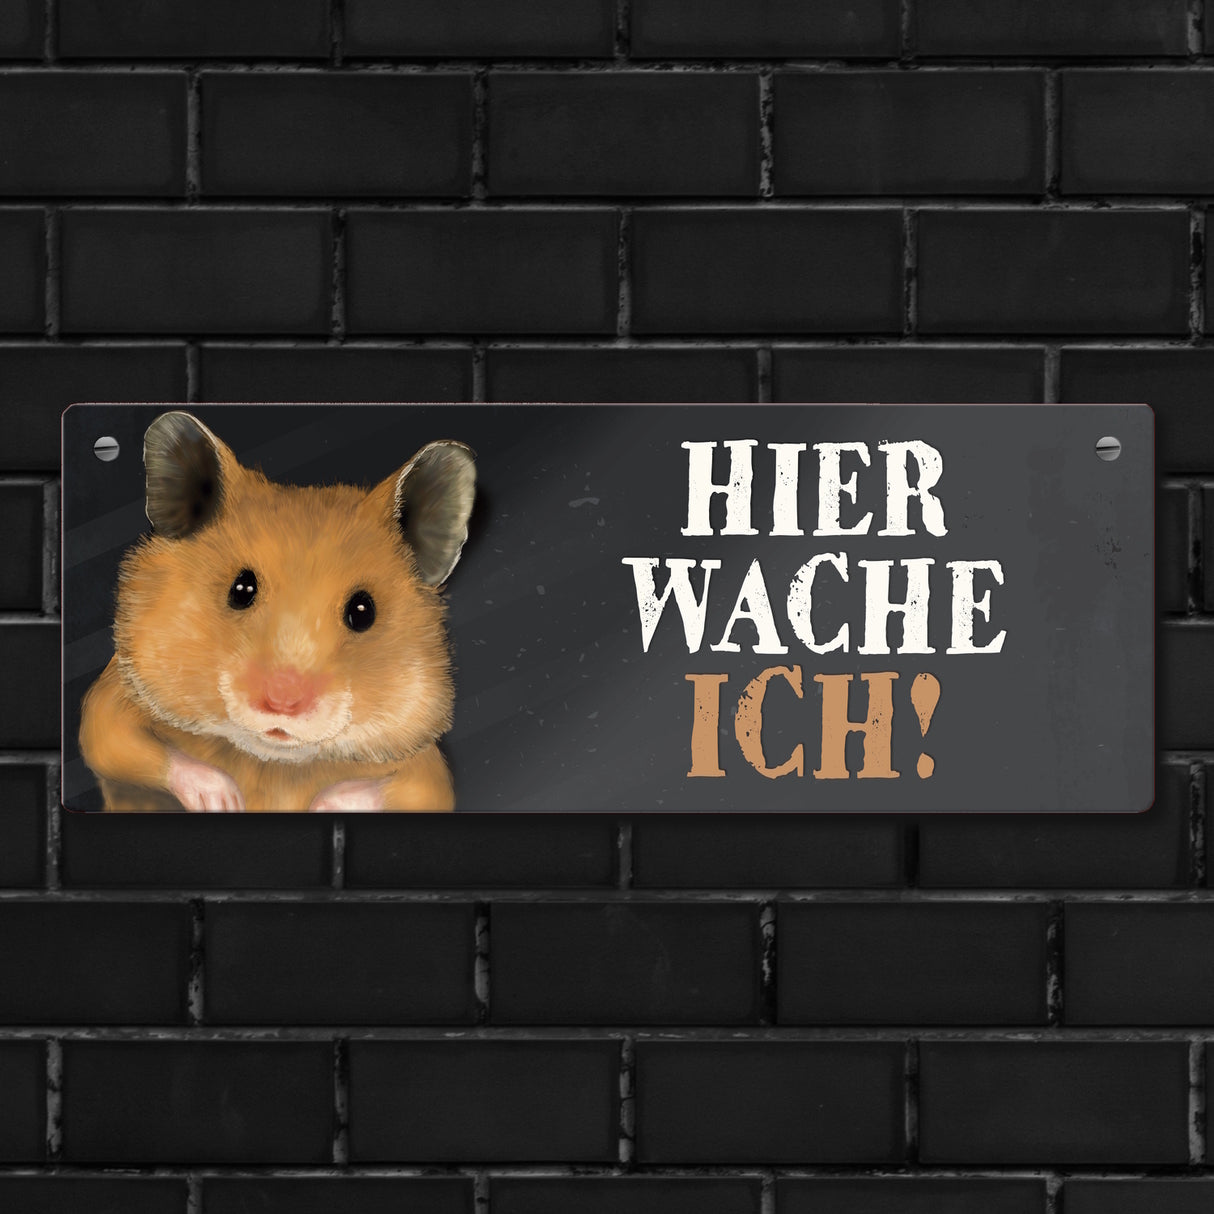 Metallschild mit Hamster Motiv und Spruch: Hier wache ich!